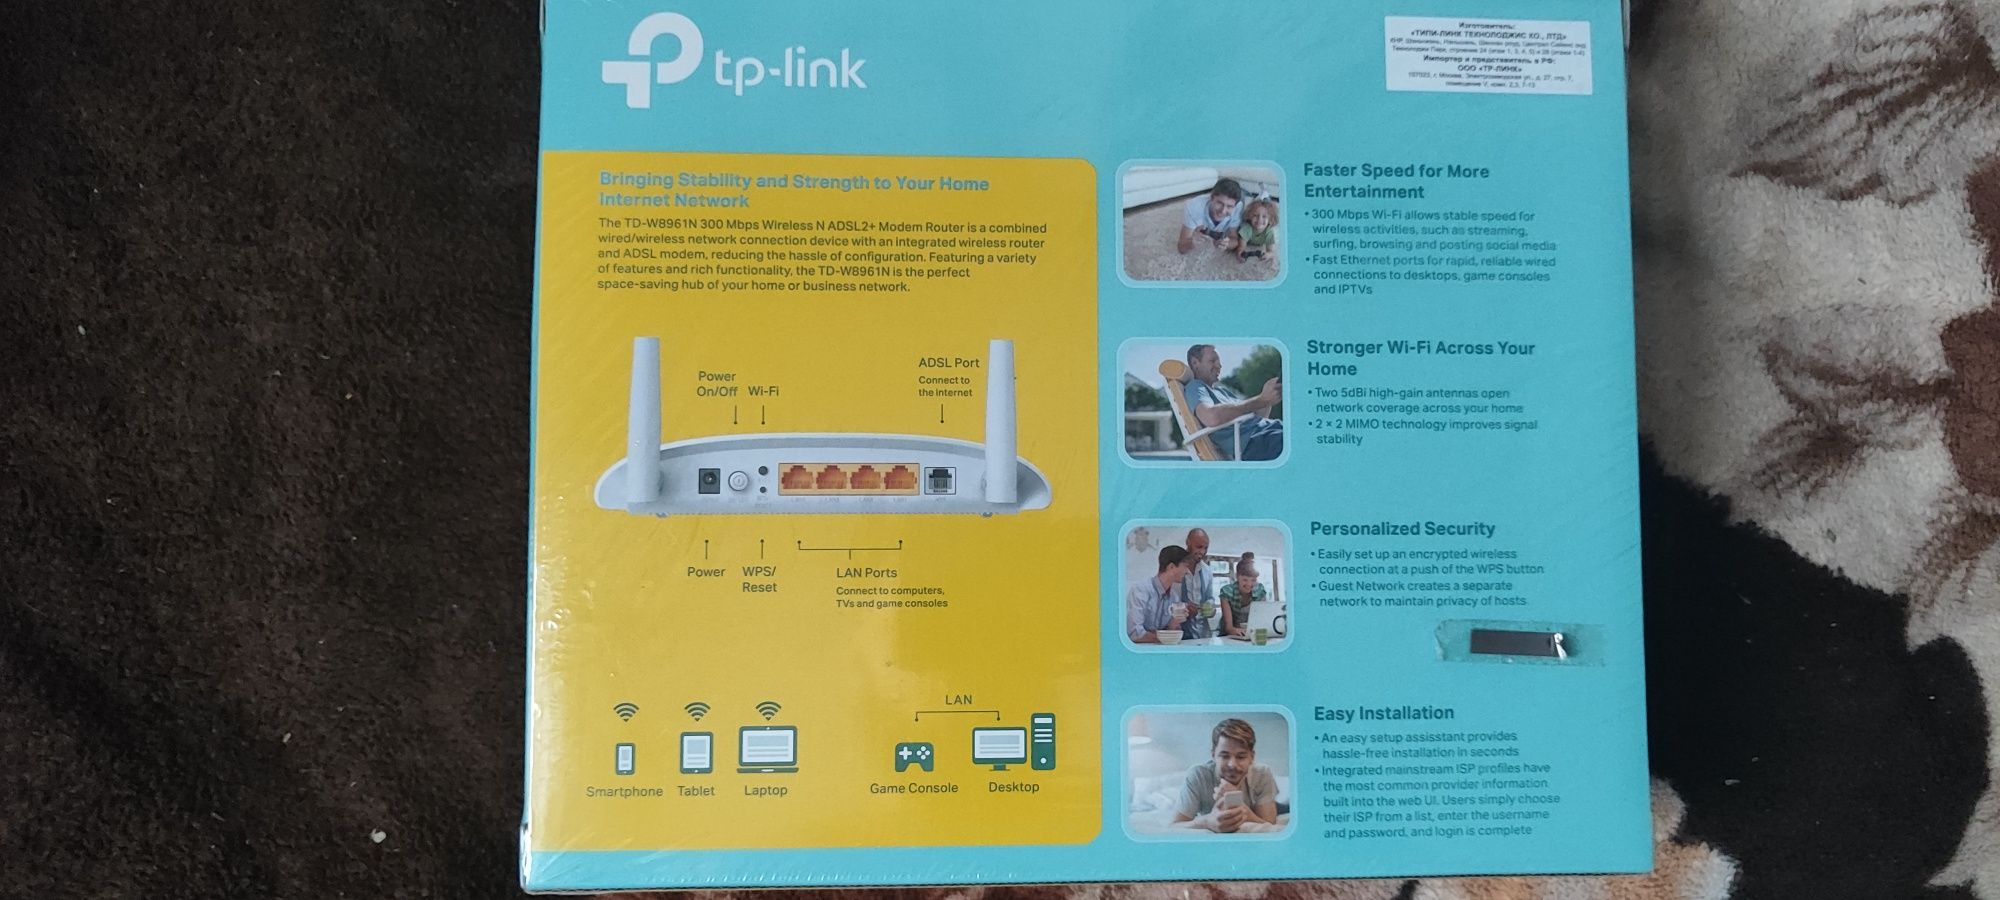 Продается  tp-link ADSL2+ Модем Роутер